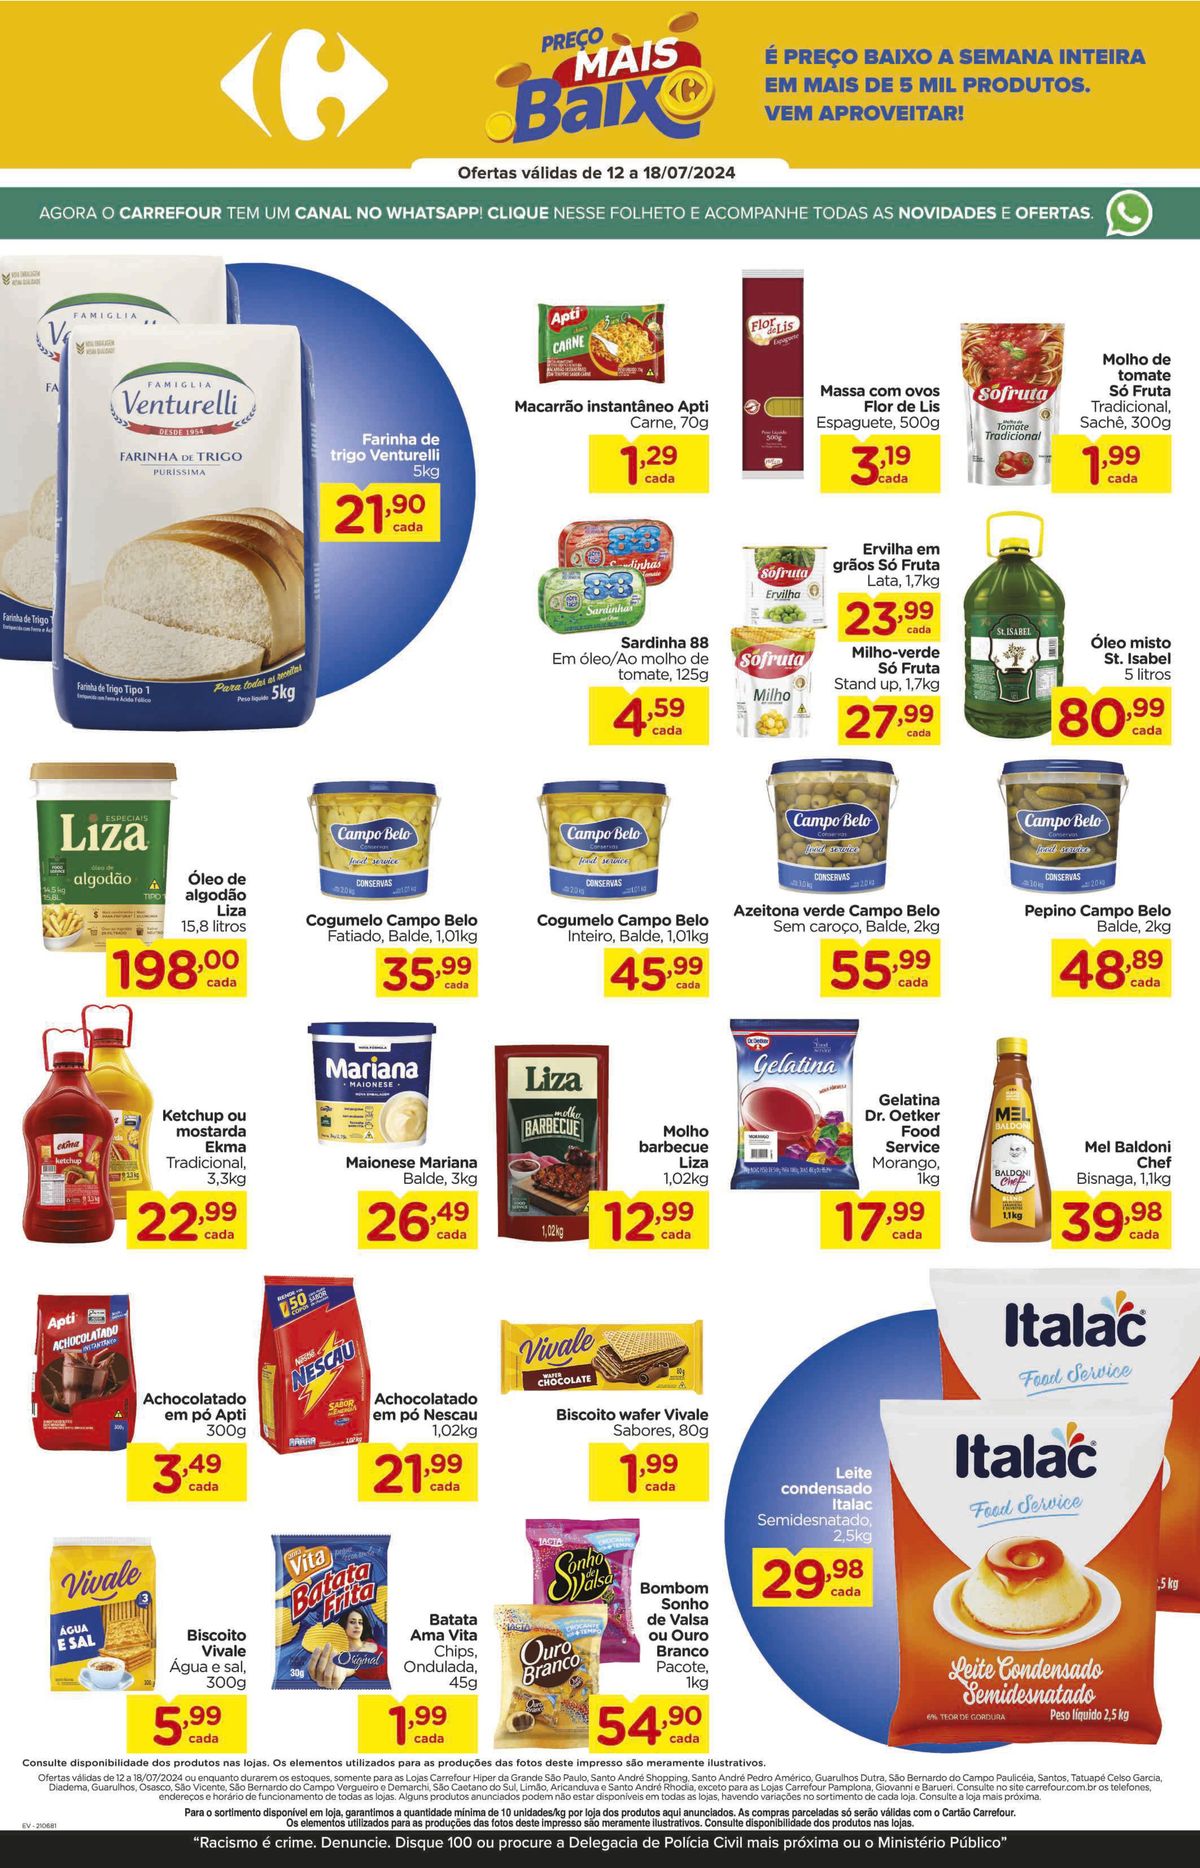 Ofertas em produtos de supermercado no Carrefour